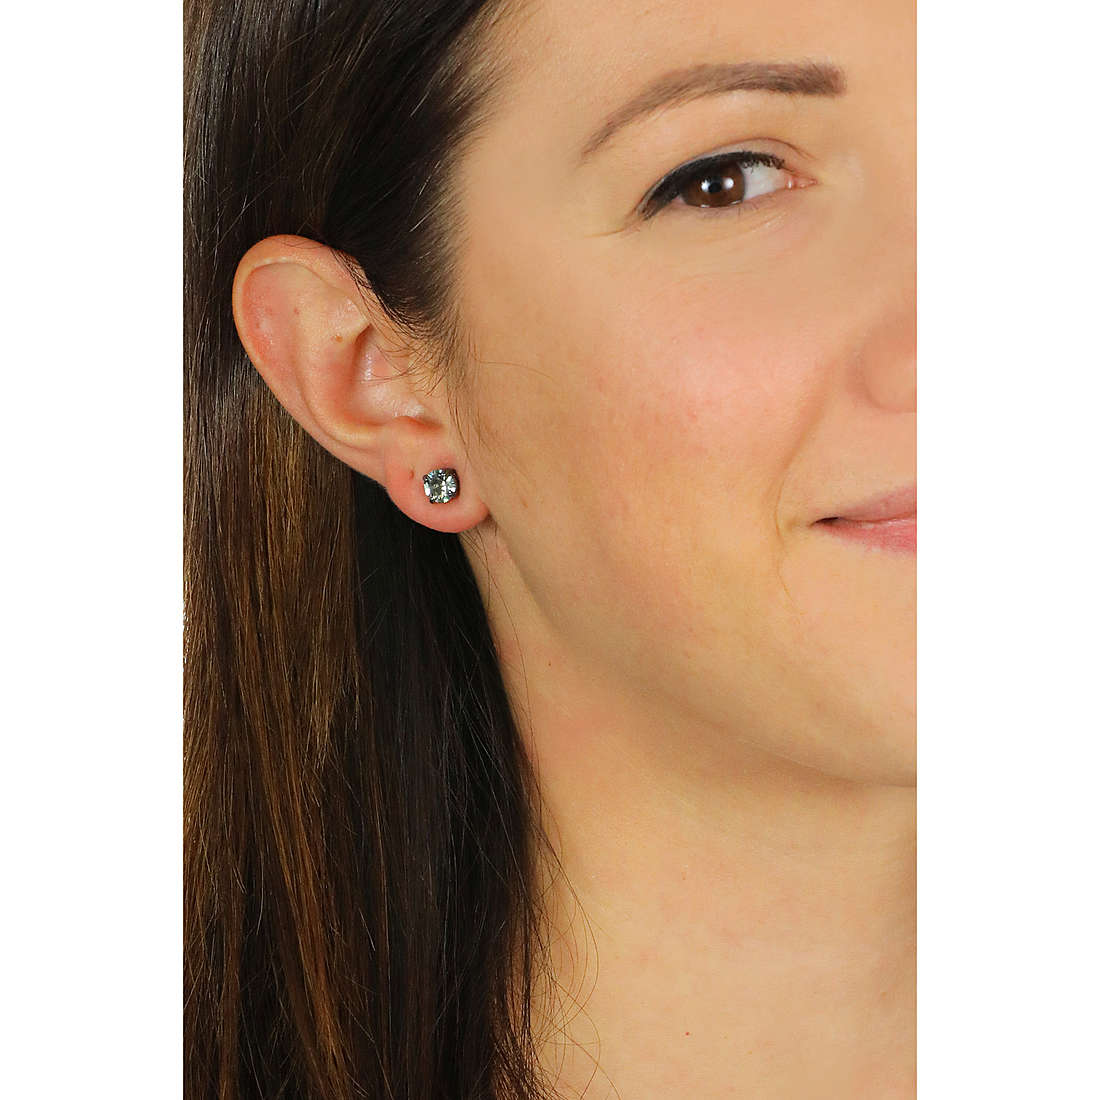 Swarovski earrings woman 5571555 wearing